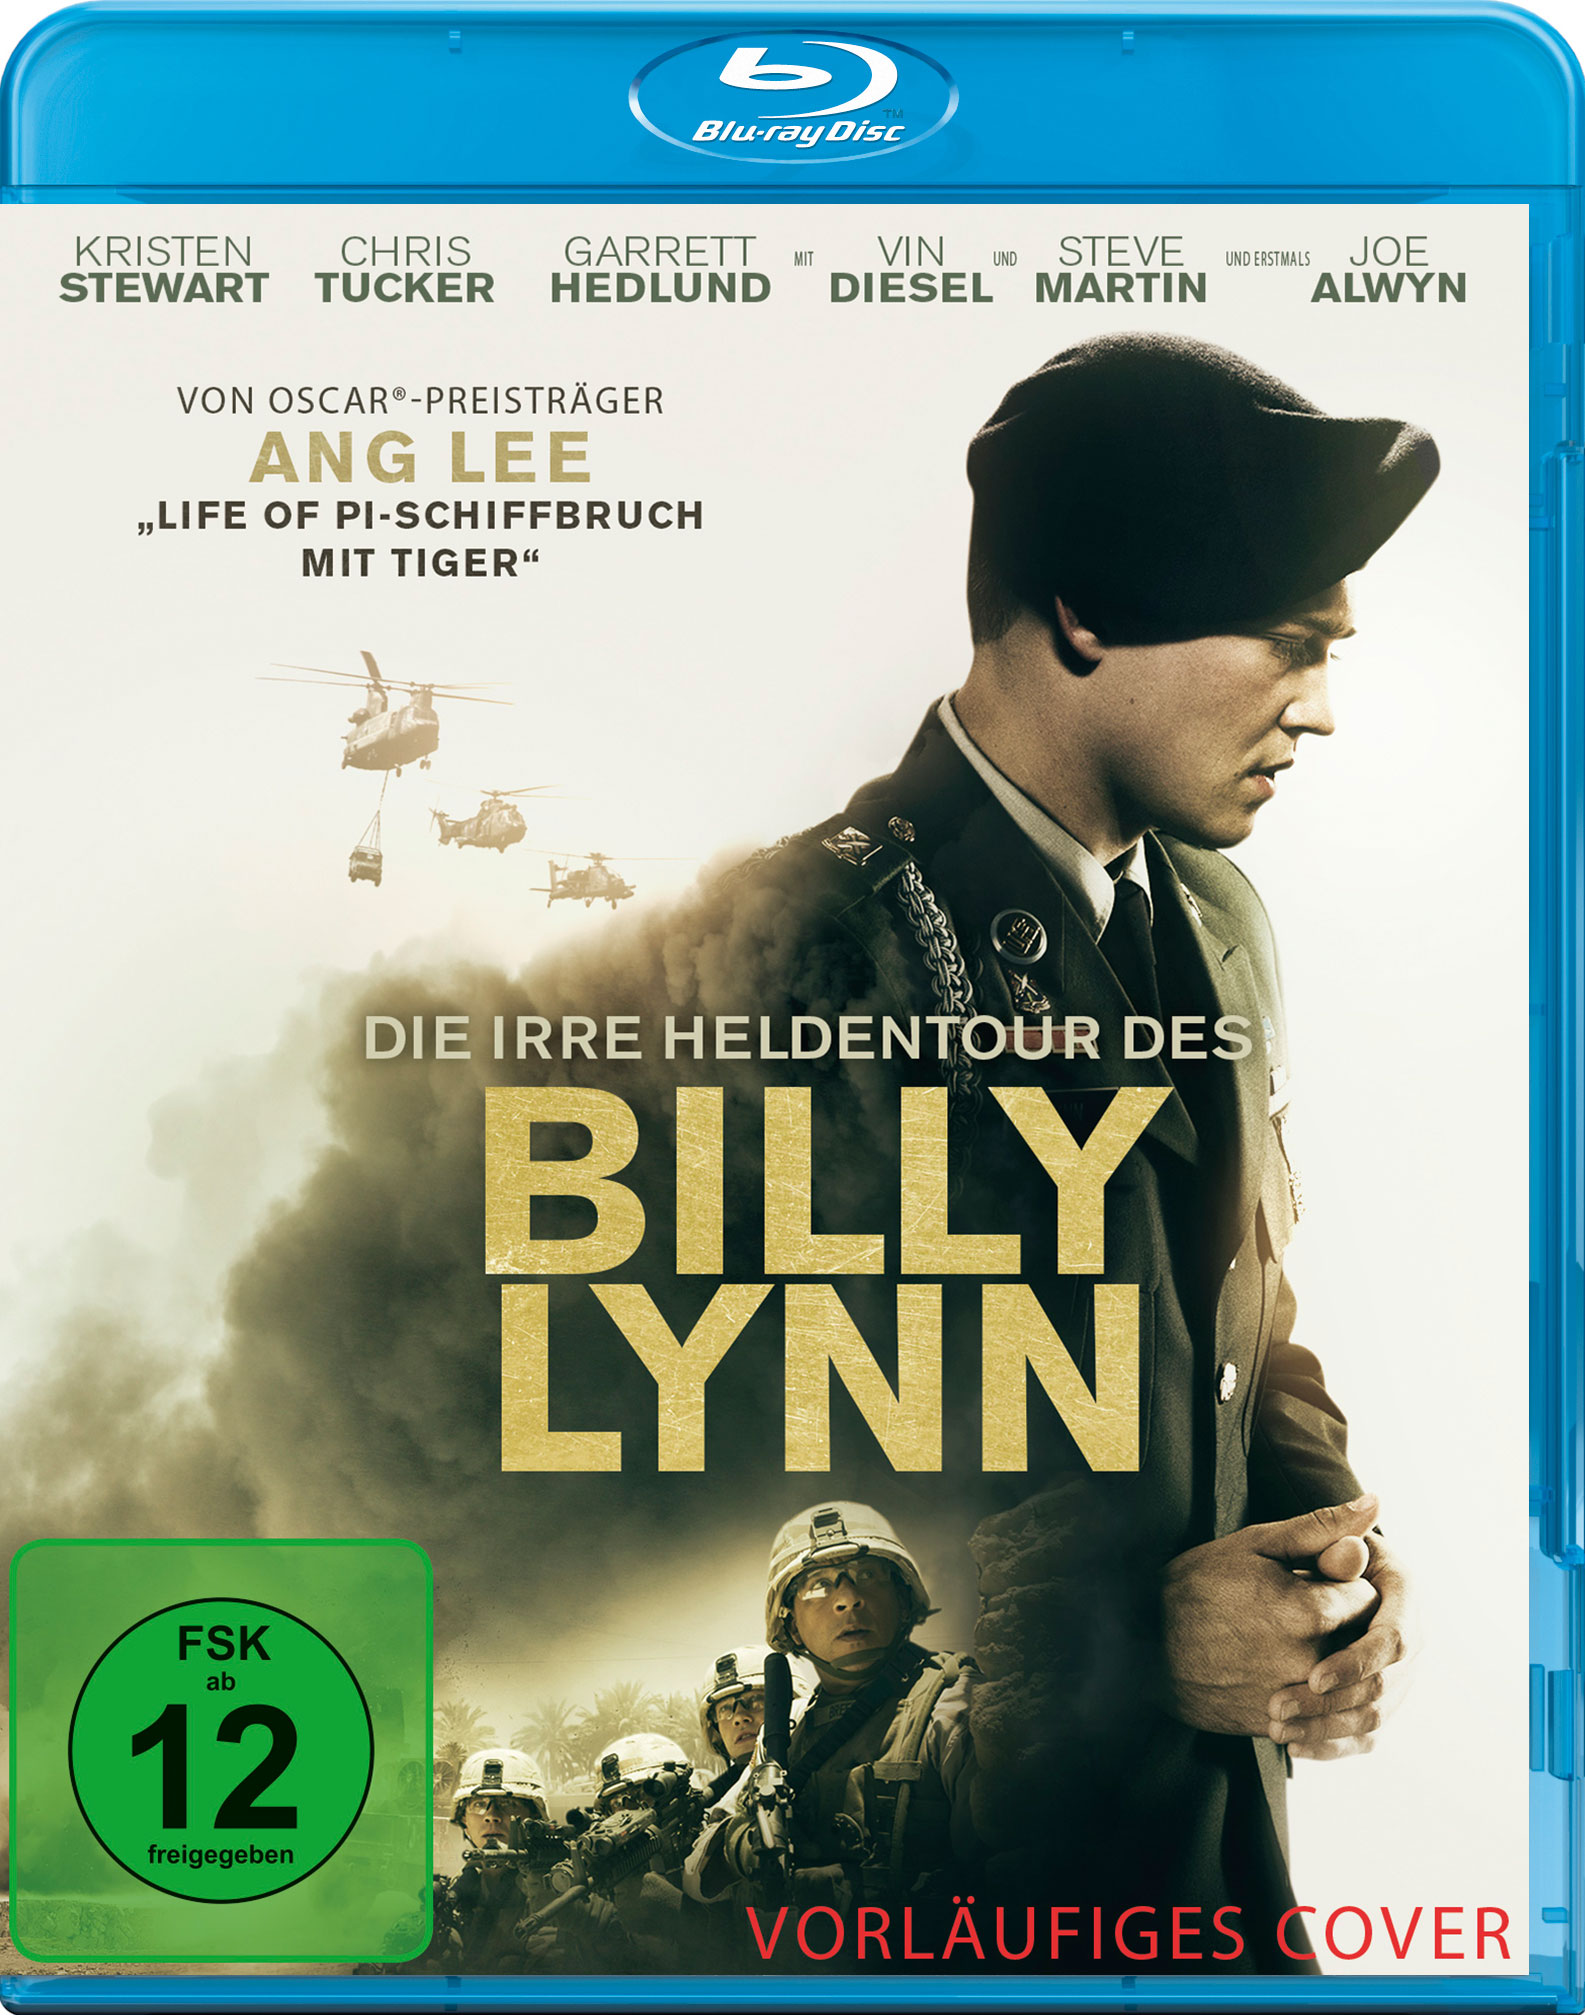 Blu-ray irre Lynn Billy Die des Heldentour